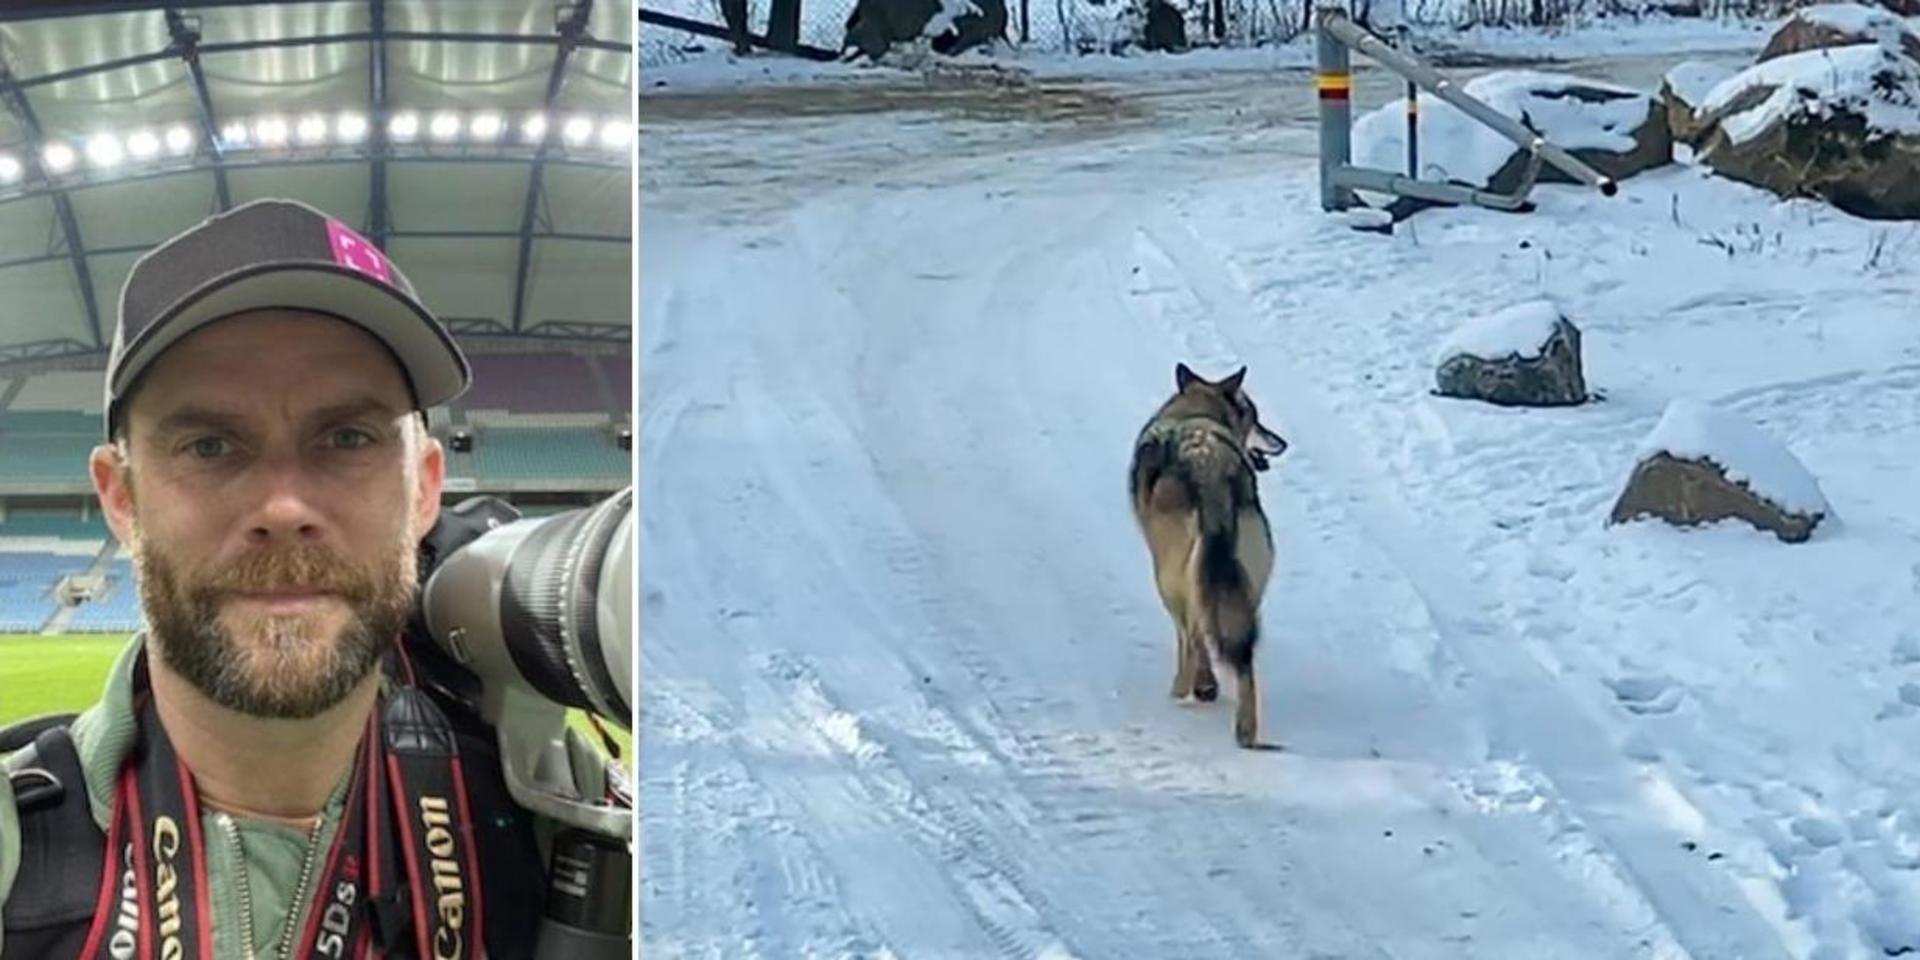 Michael Erichsen, fotograf från Kungälv, stötte på en varg på väg till jobbet i Bohus på onsdagsmorgonen.